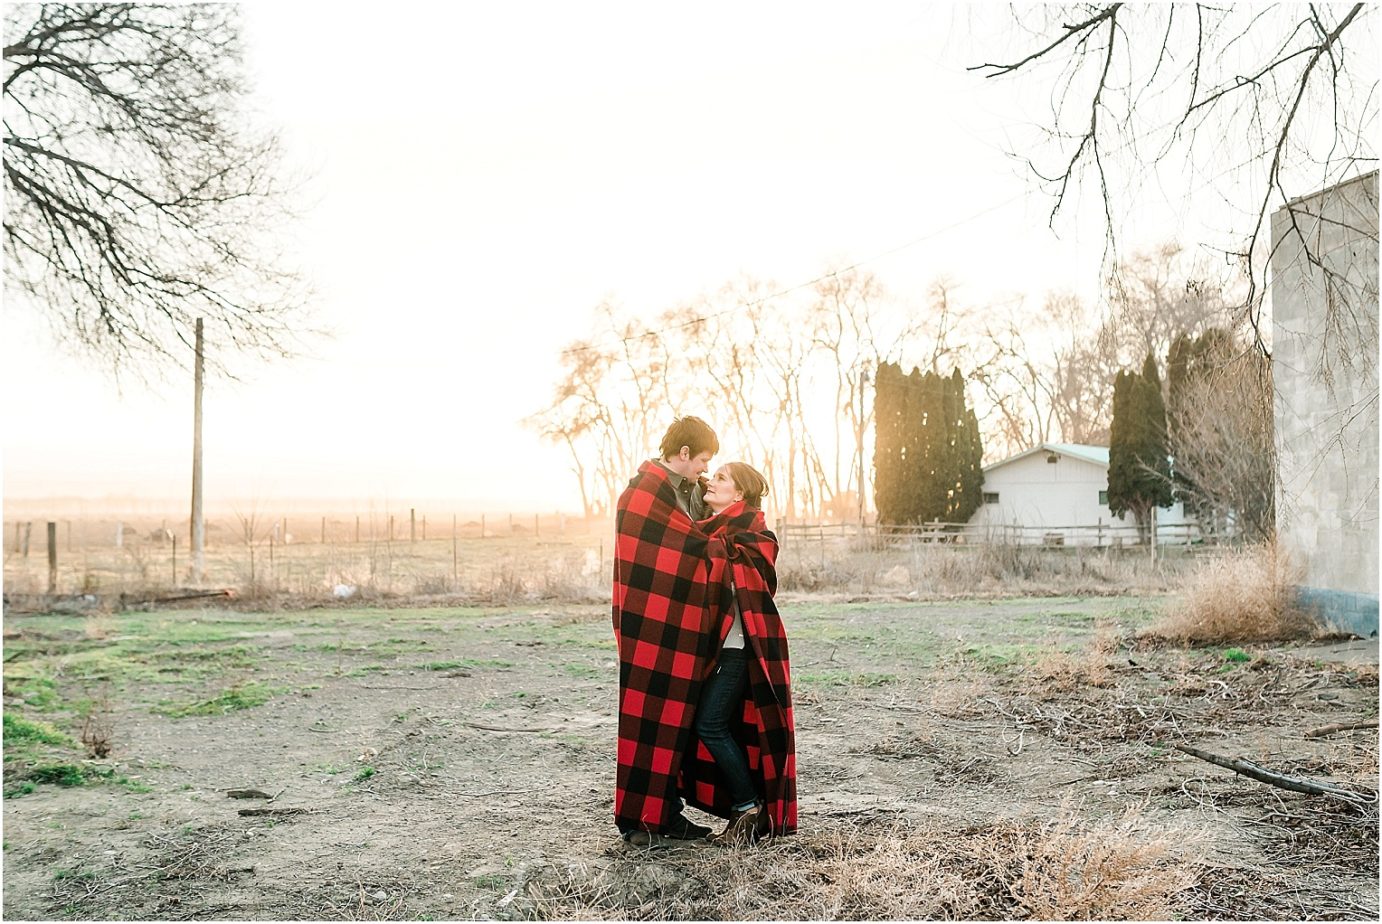 Hop Farm Engagement Session Yakima Photographer couple with Pendleton blanket